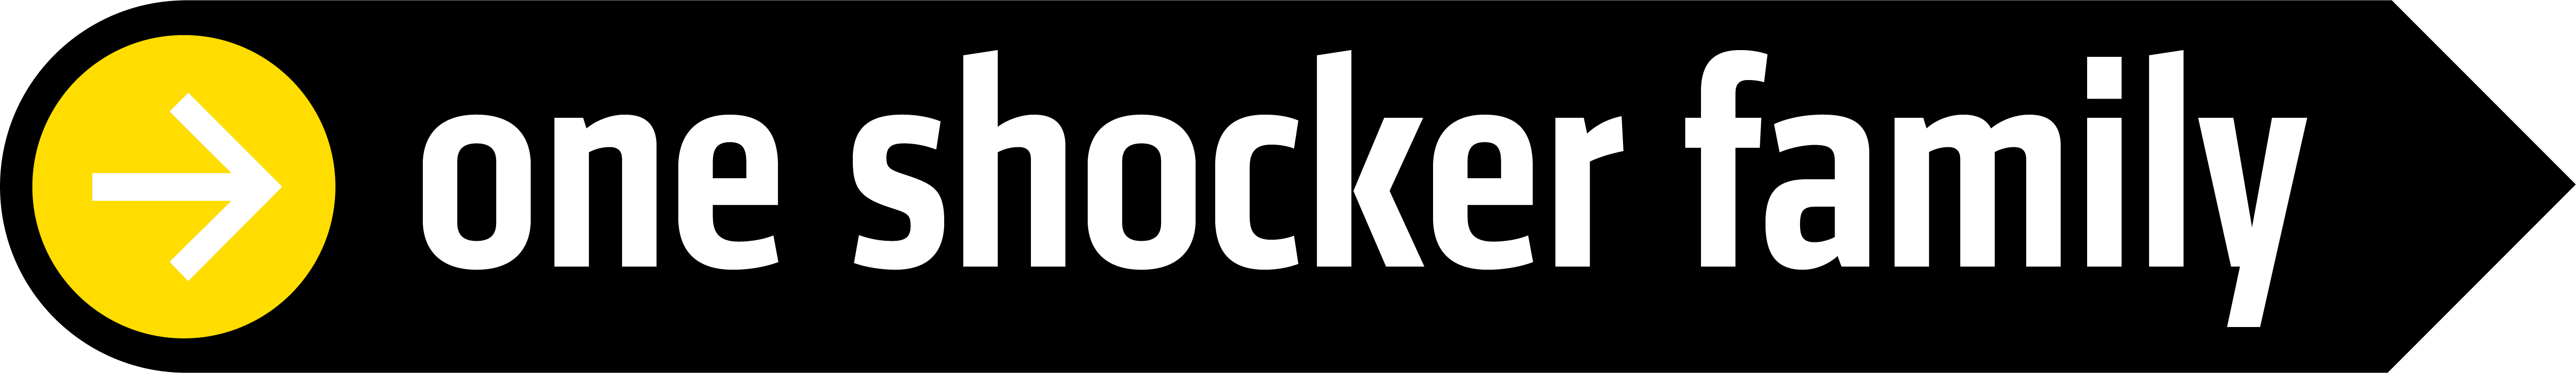 Shocker Family logo